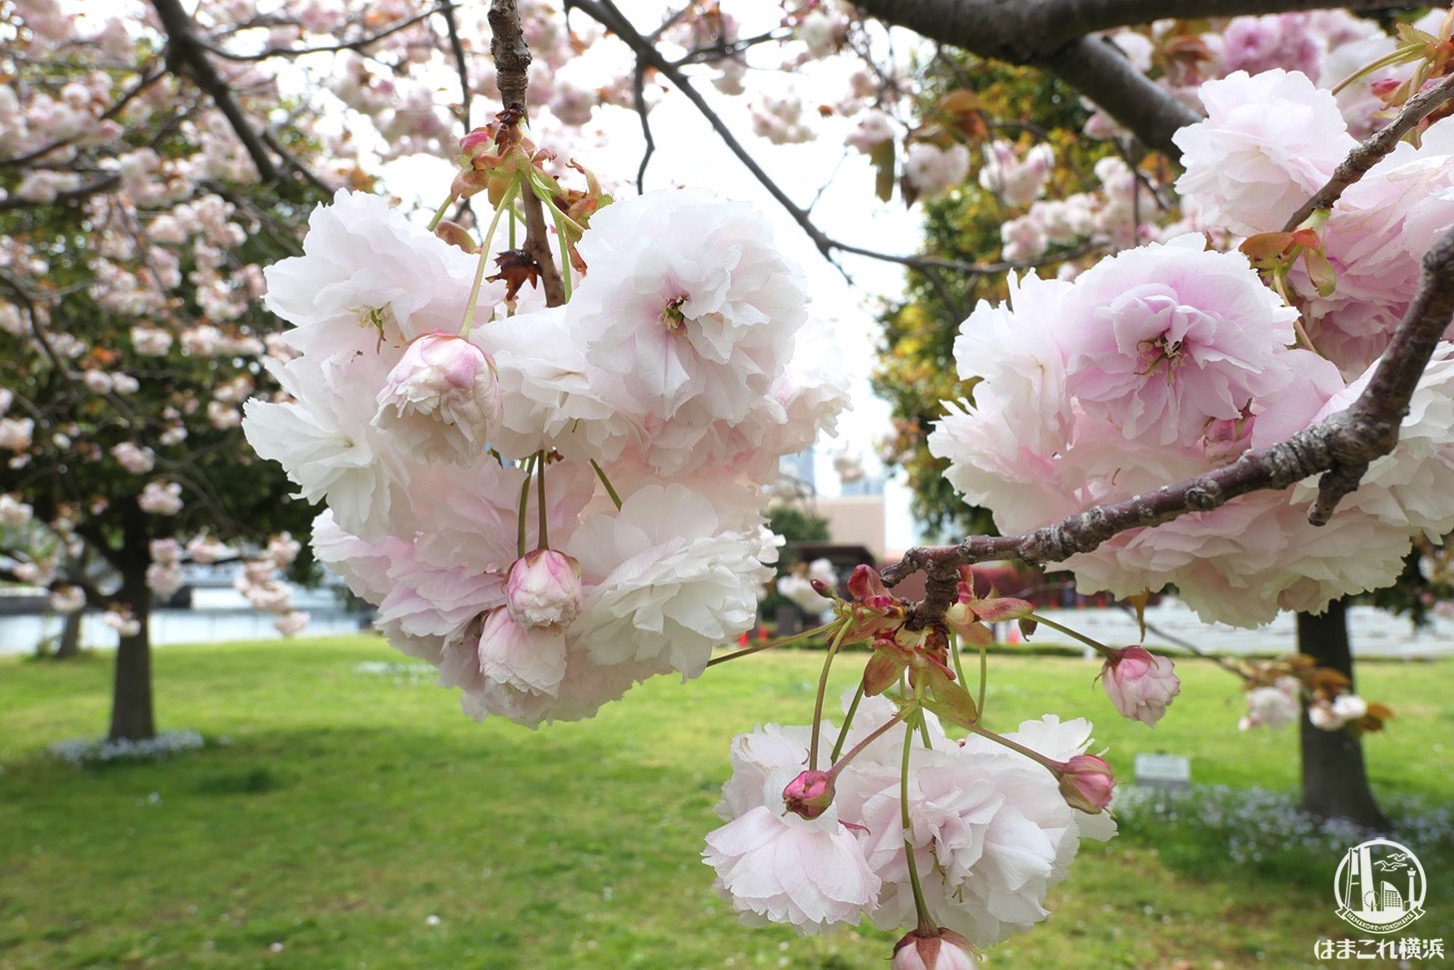 横浜赤レンガ倉庫近くの八重桜、散歩中に偶然見つけて癒された